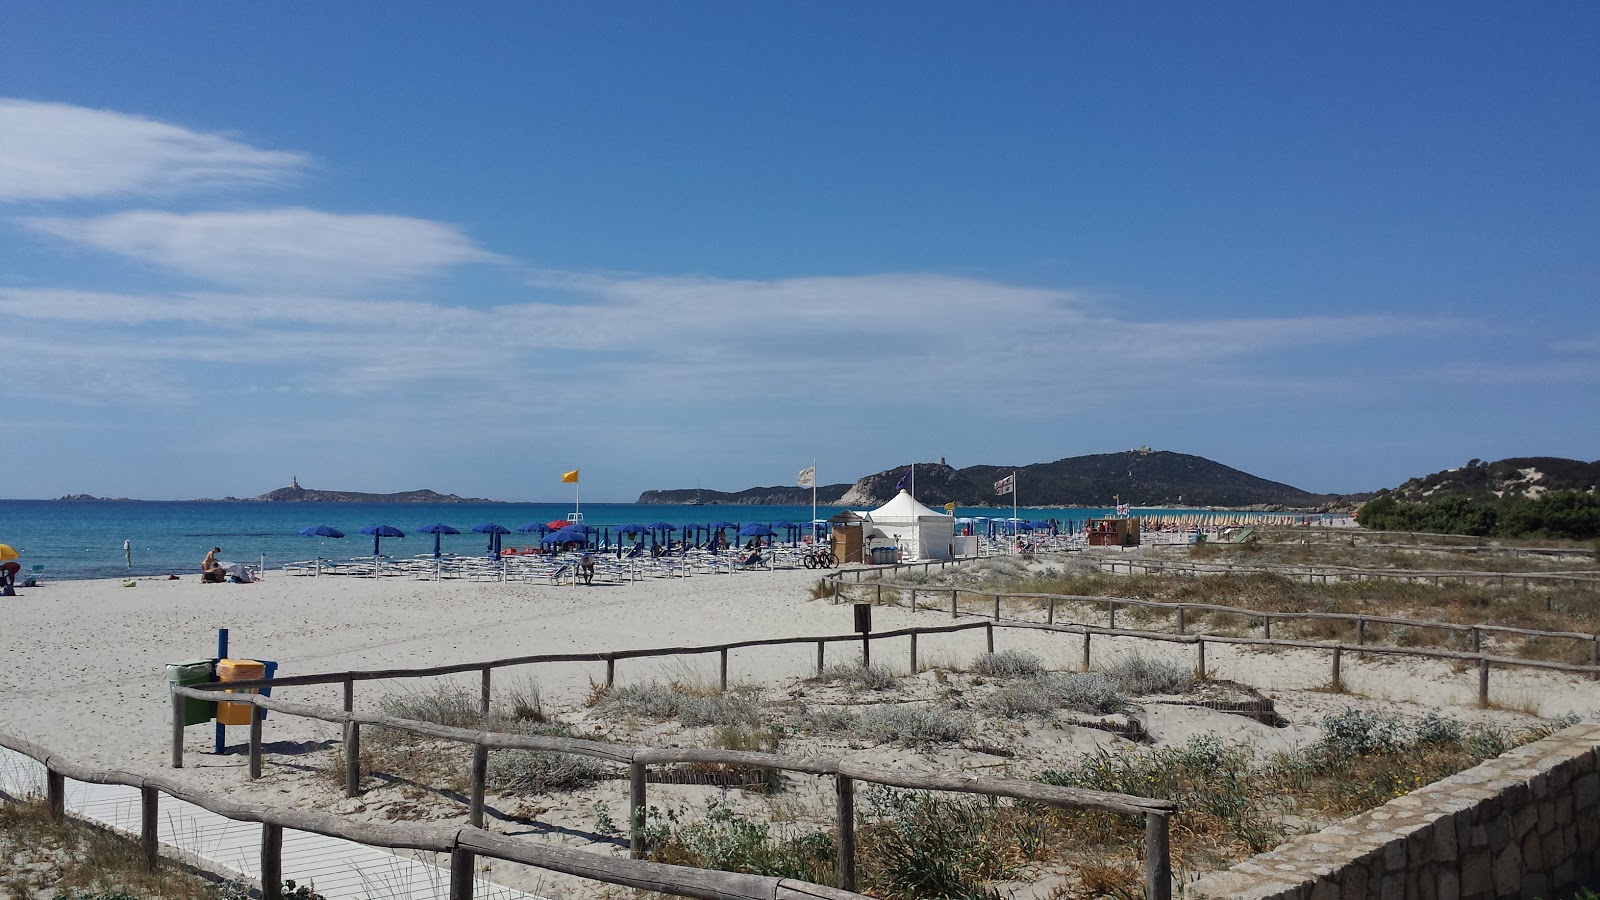 Foto af Spiaggia di Simius - populært sted blandt afslapningskendere